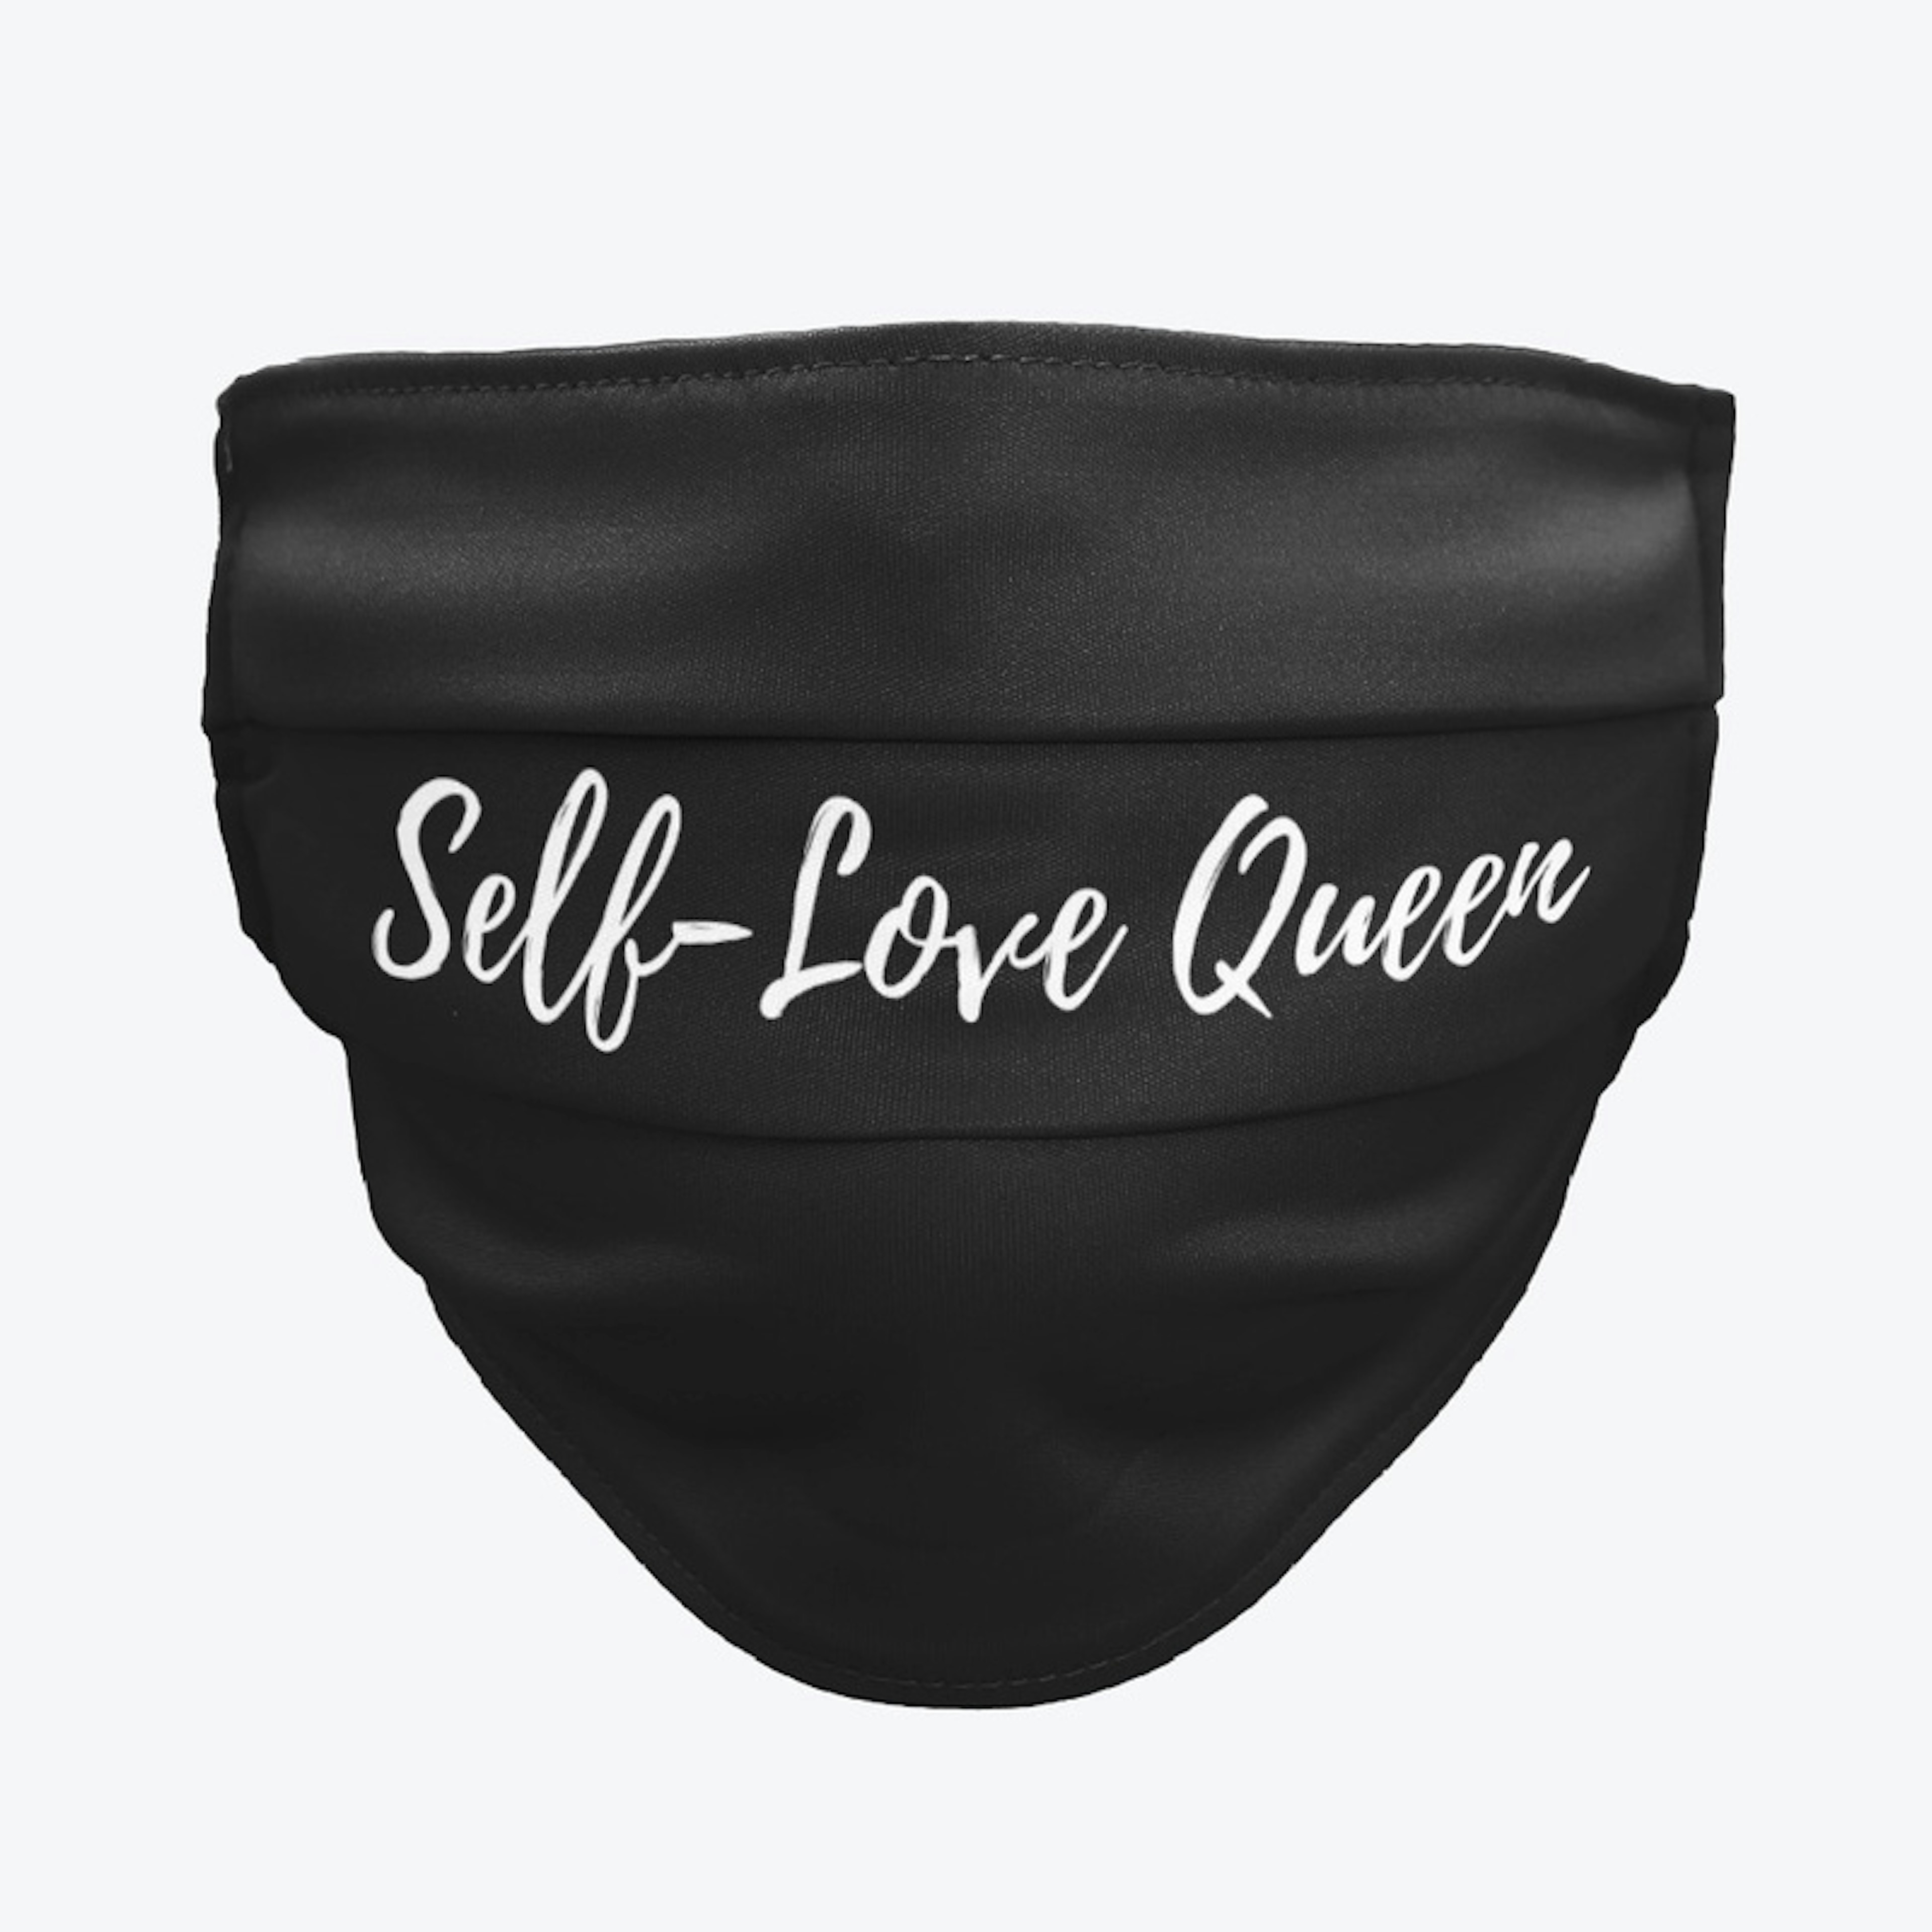 Self-Love Queen Mask